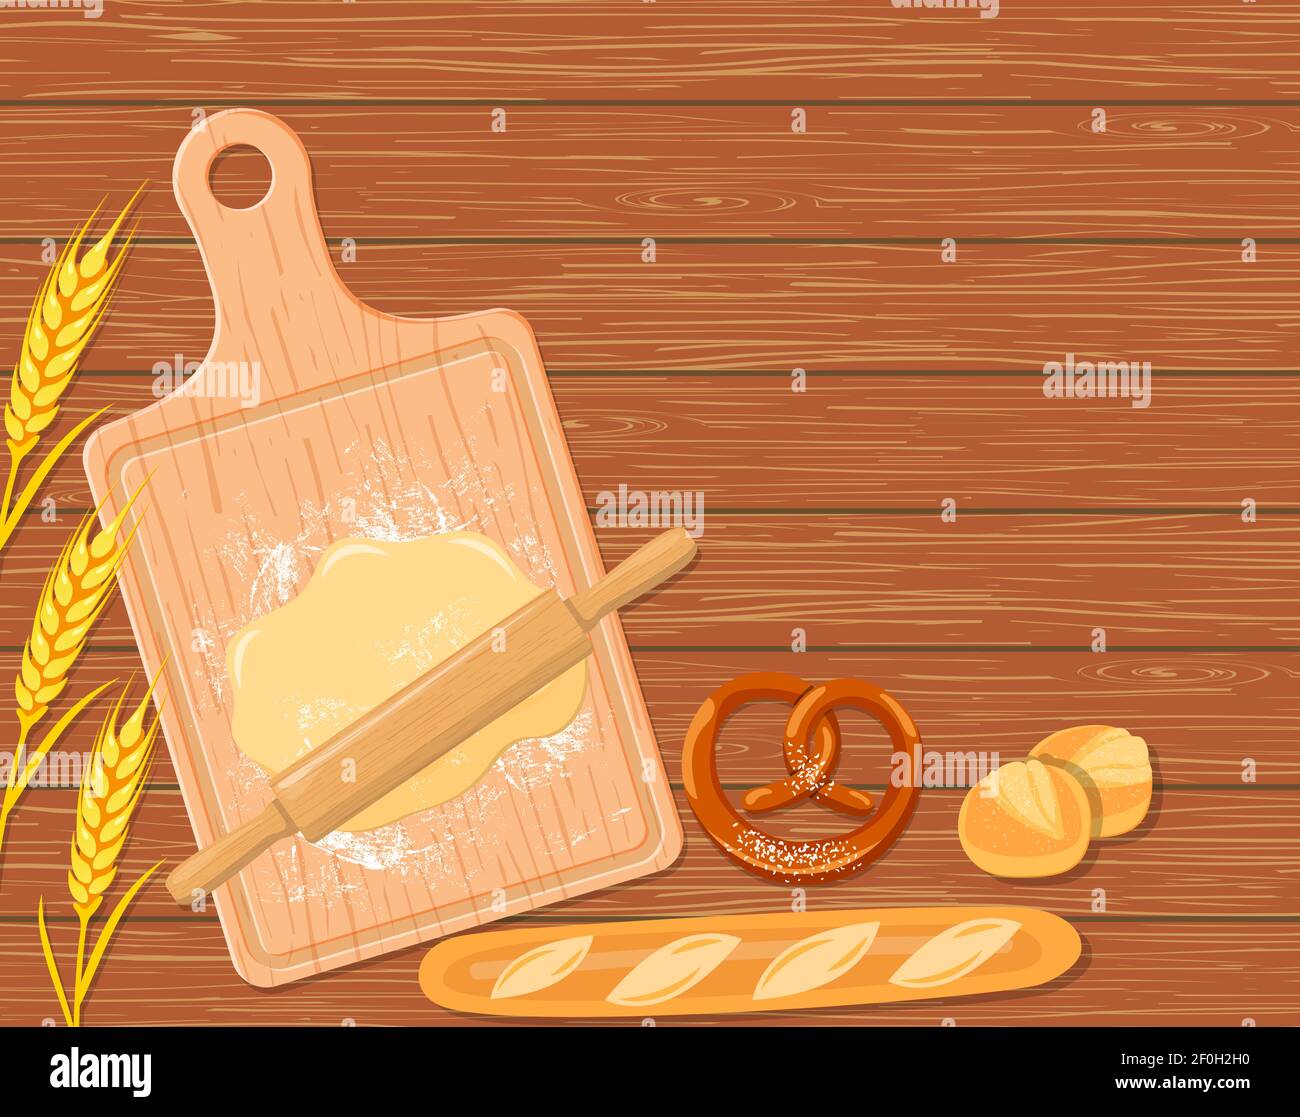 Planche à enfourner la pain Banque d'images vectorielles - Page 2 - Alamy